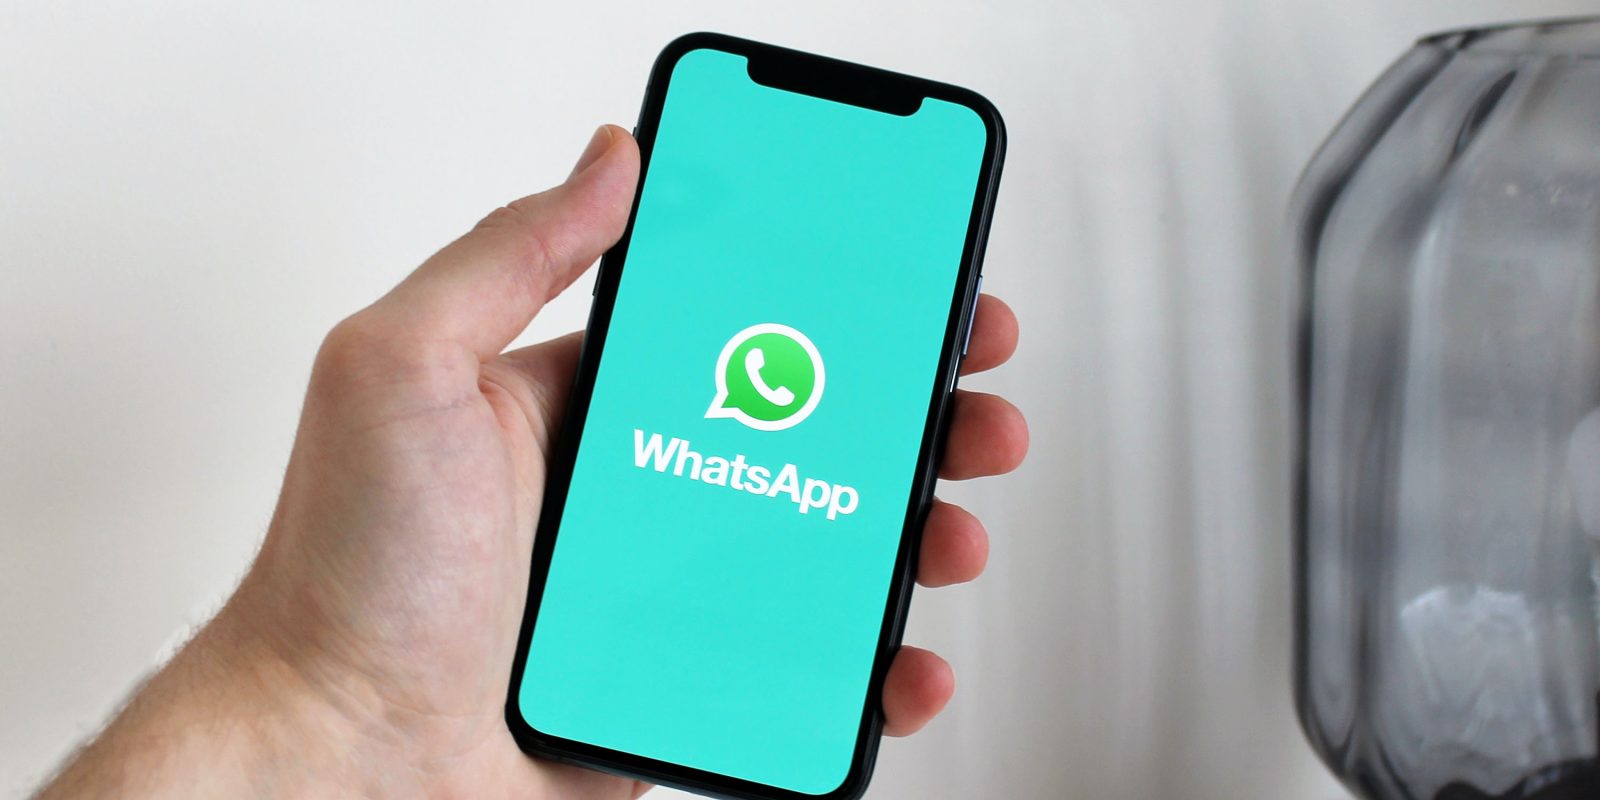 WhatsApp data sharing